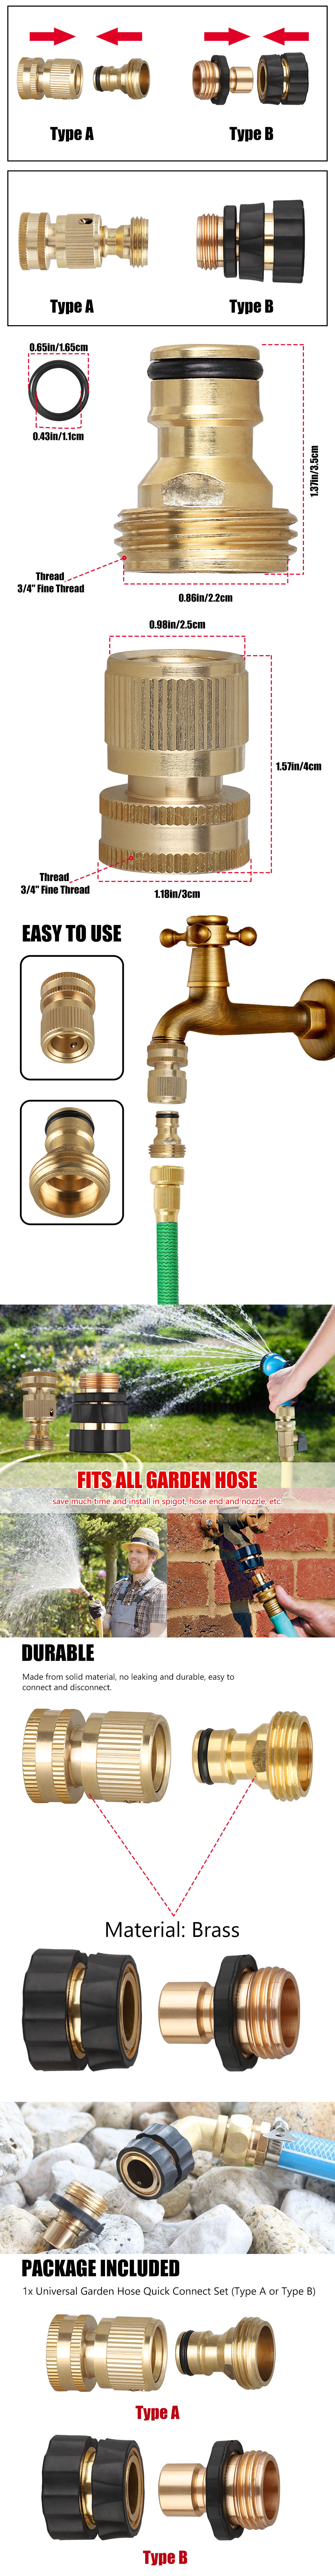 garden hose connector size